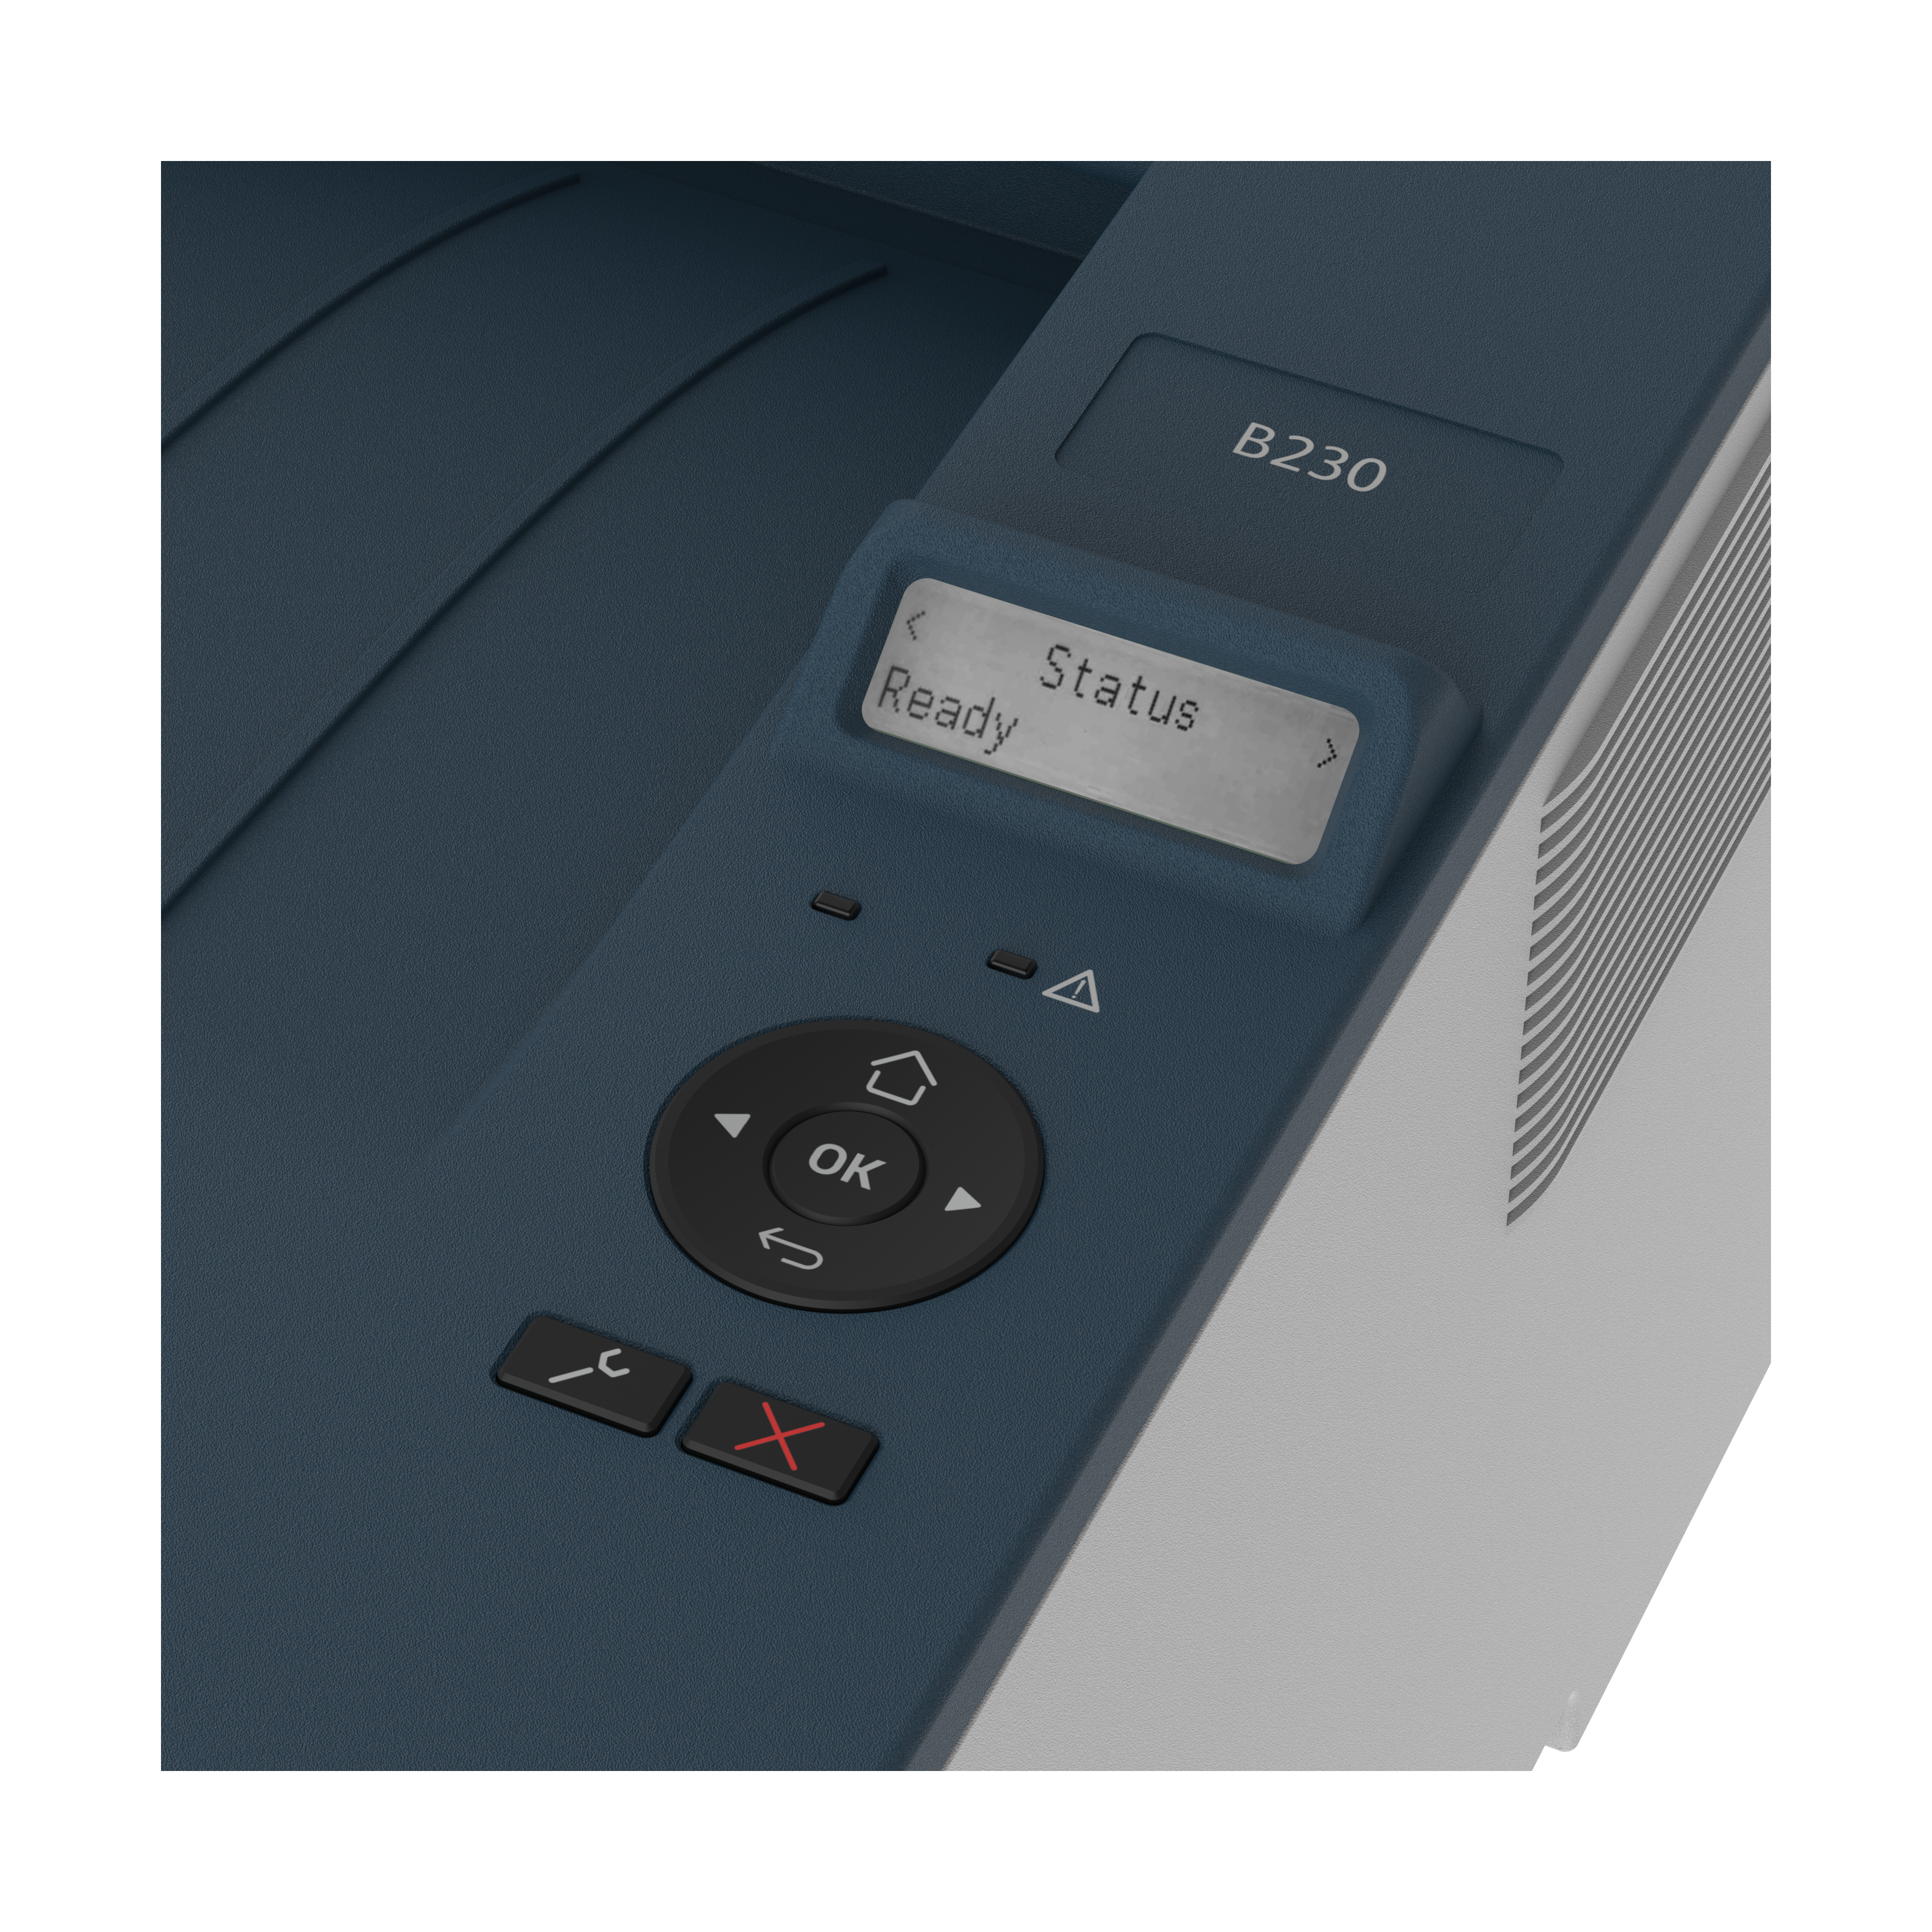 Xerox B230 Imprimante recto verso sans fil A4 34 ppm, PCL5e/6, 2